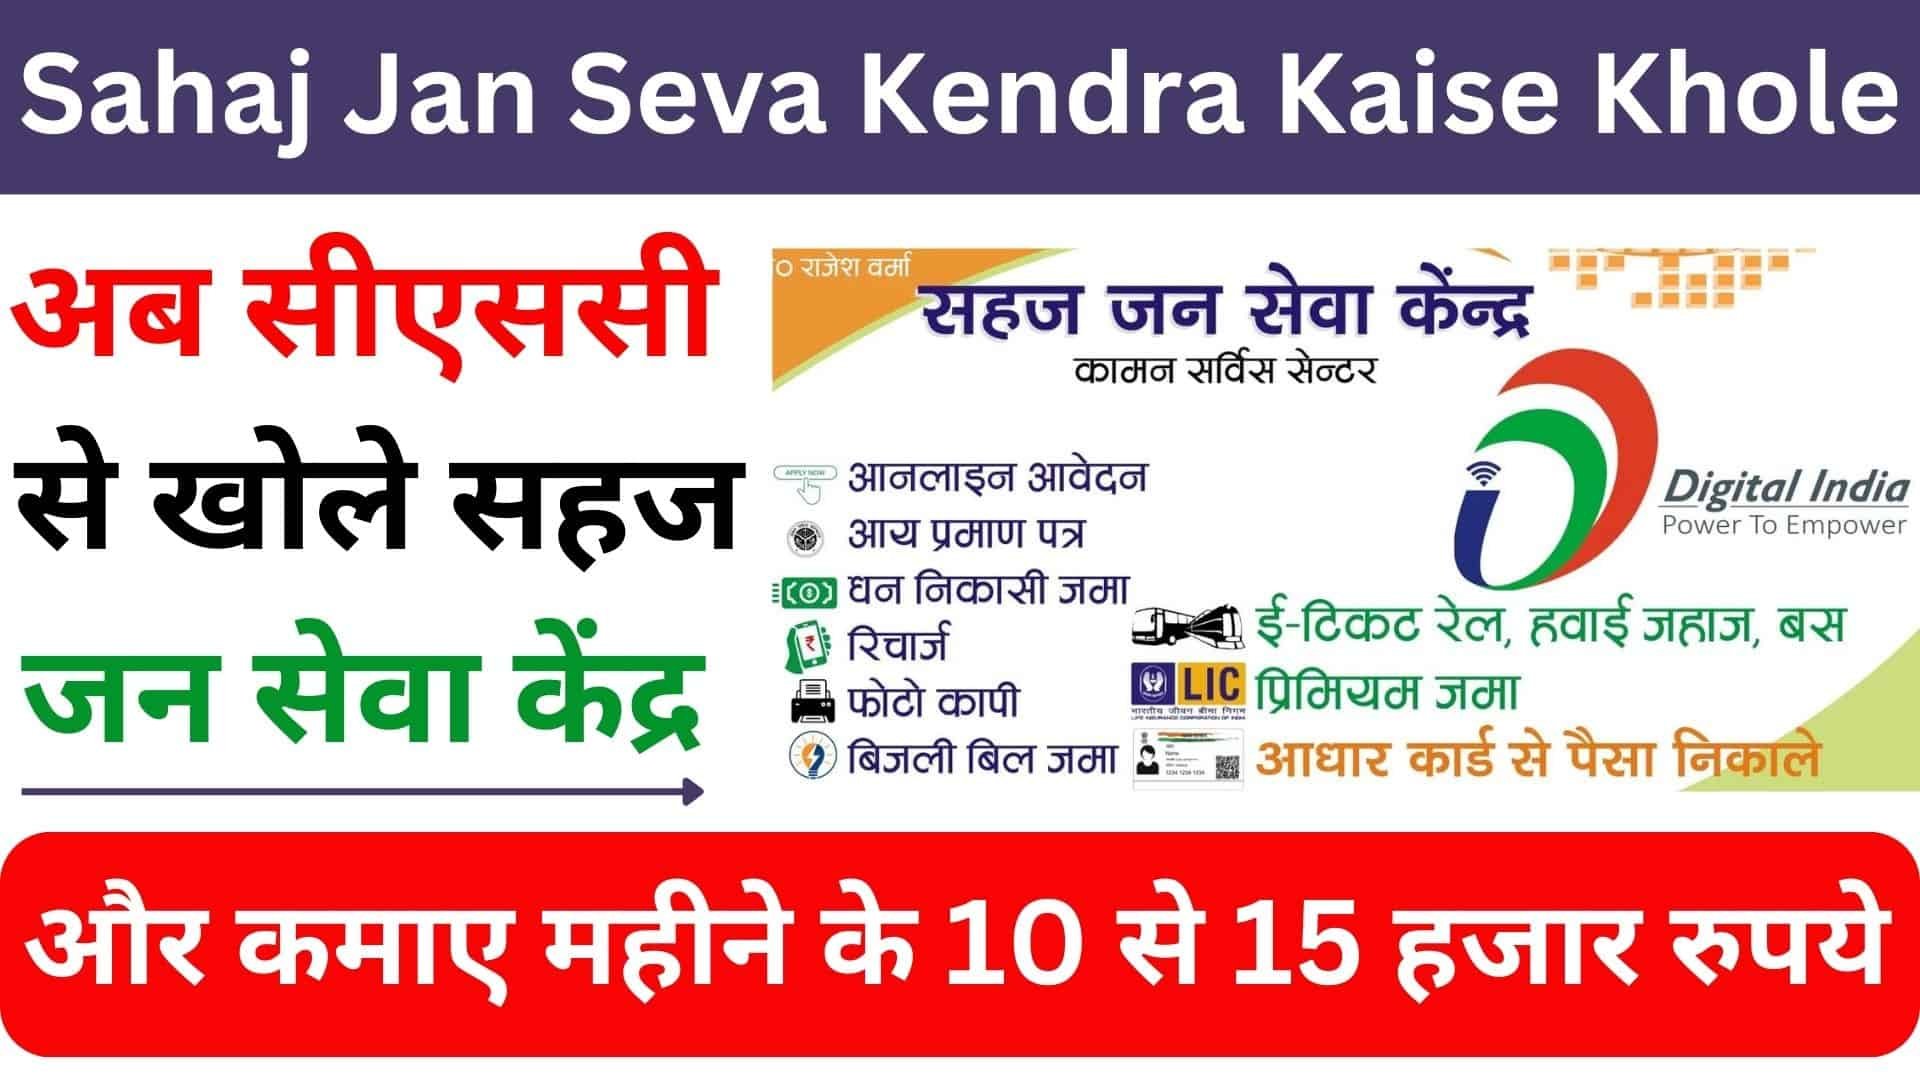 Sahaj Jan Seva Kendra Kaise Khole : अब सीएससी से खोले सहज जन सेवा केंद्र और कमाए महीने के 10 से 15 हजार रुपये